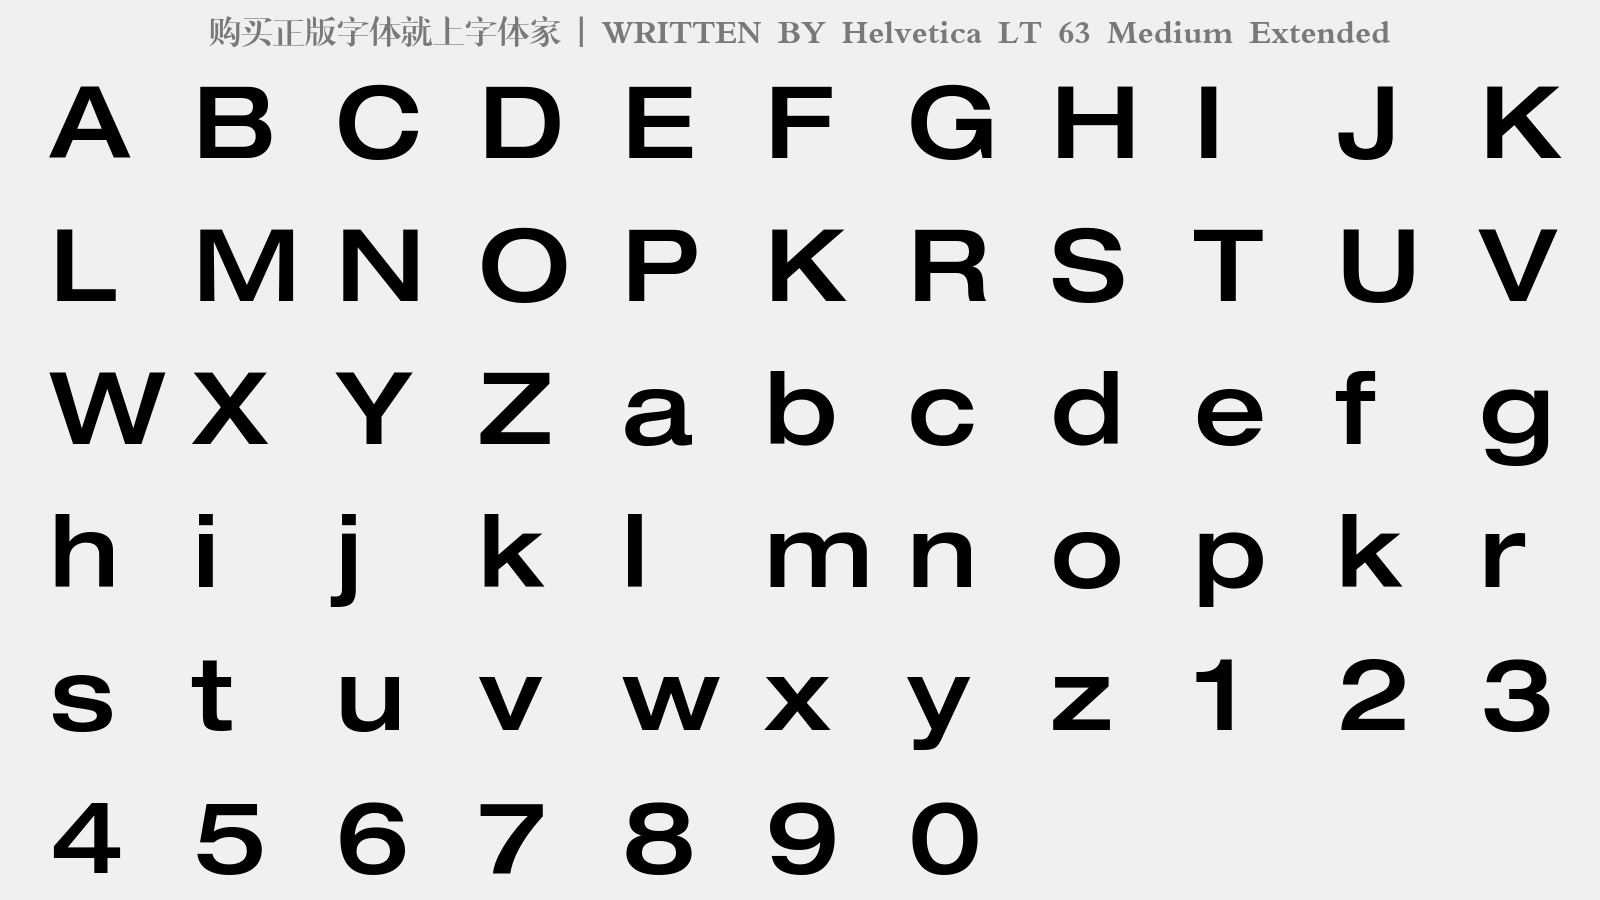 Helvetica LT 63 Medium Extended - 大写字母/小写字母/数字